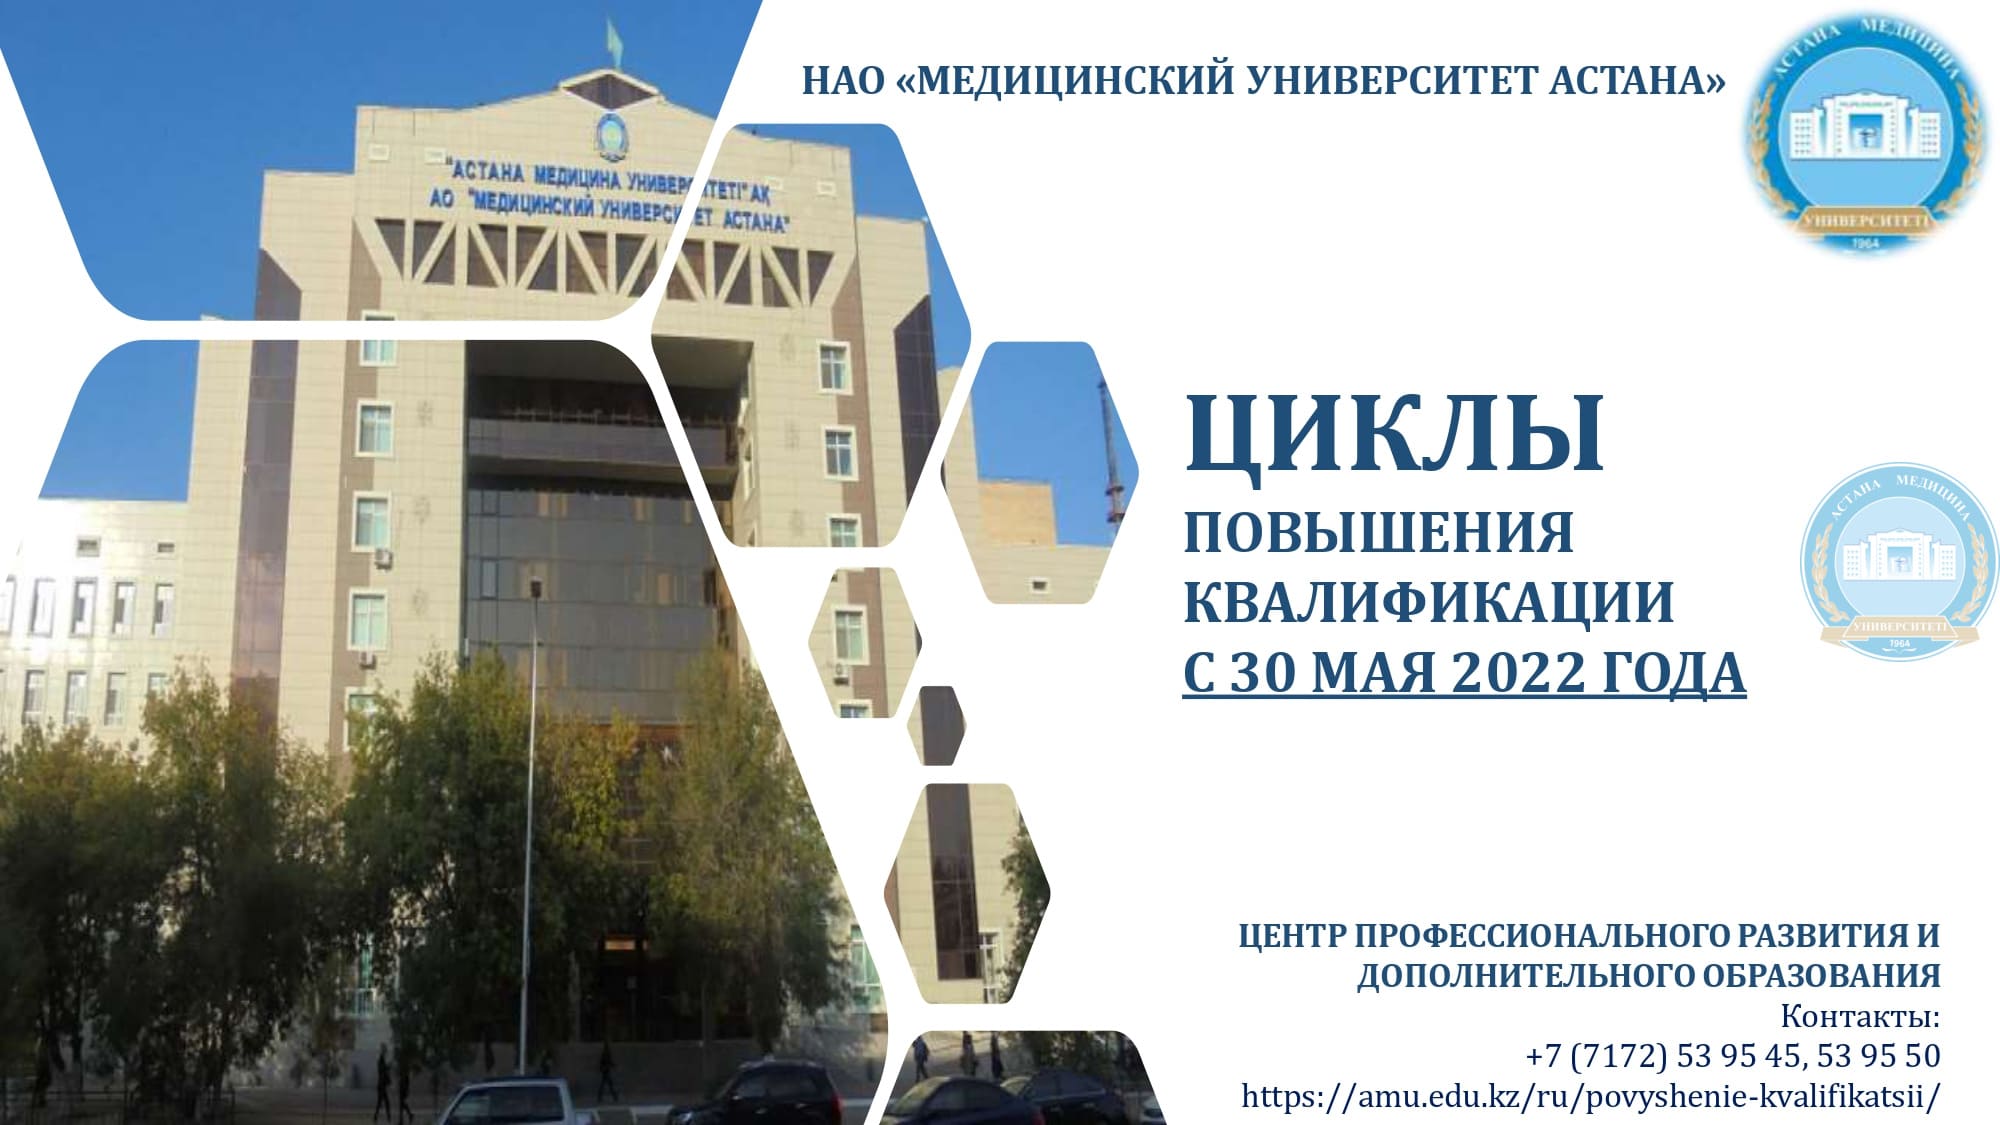 Астана медицинский университет (amu.edu.kz) Сириус МУА